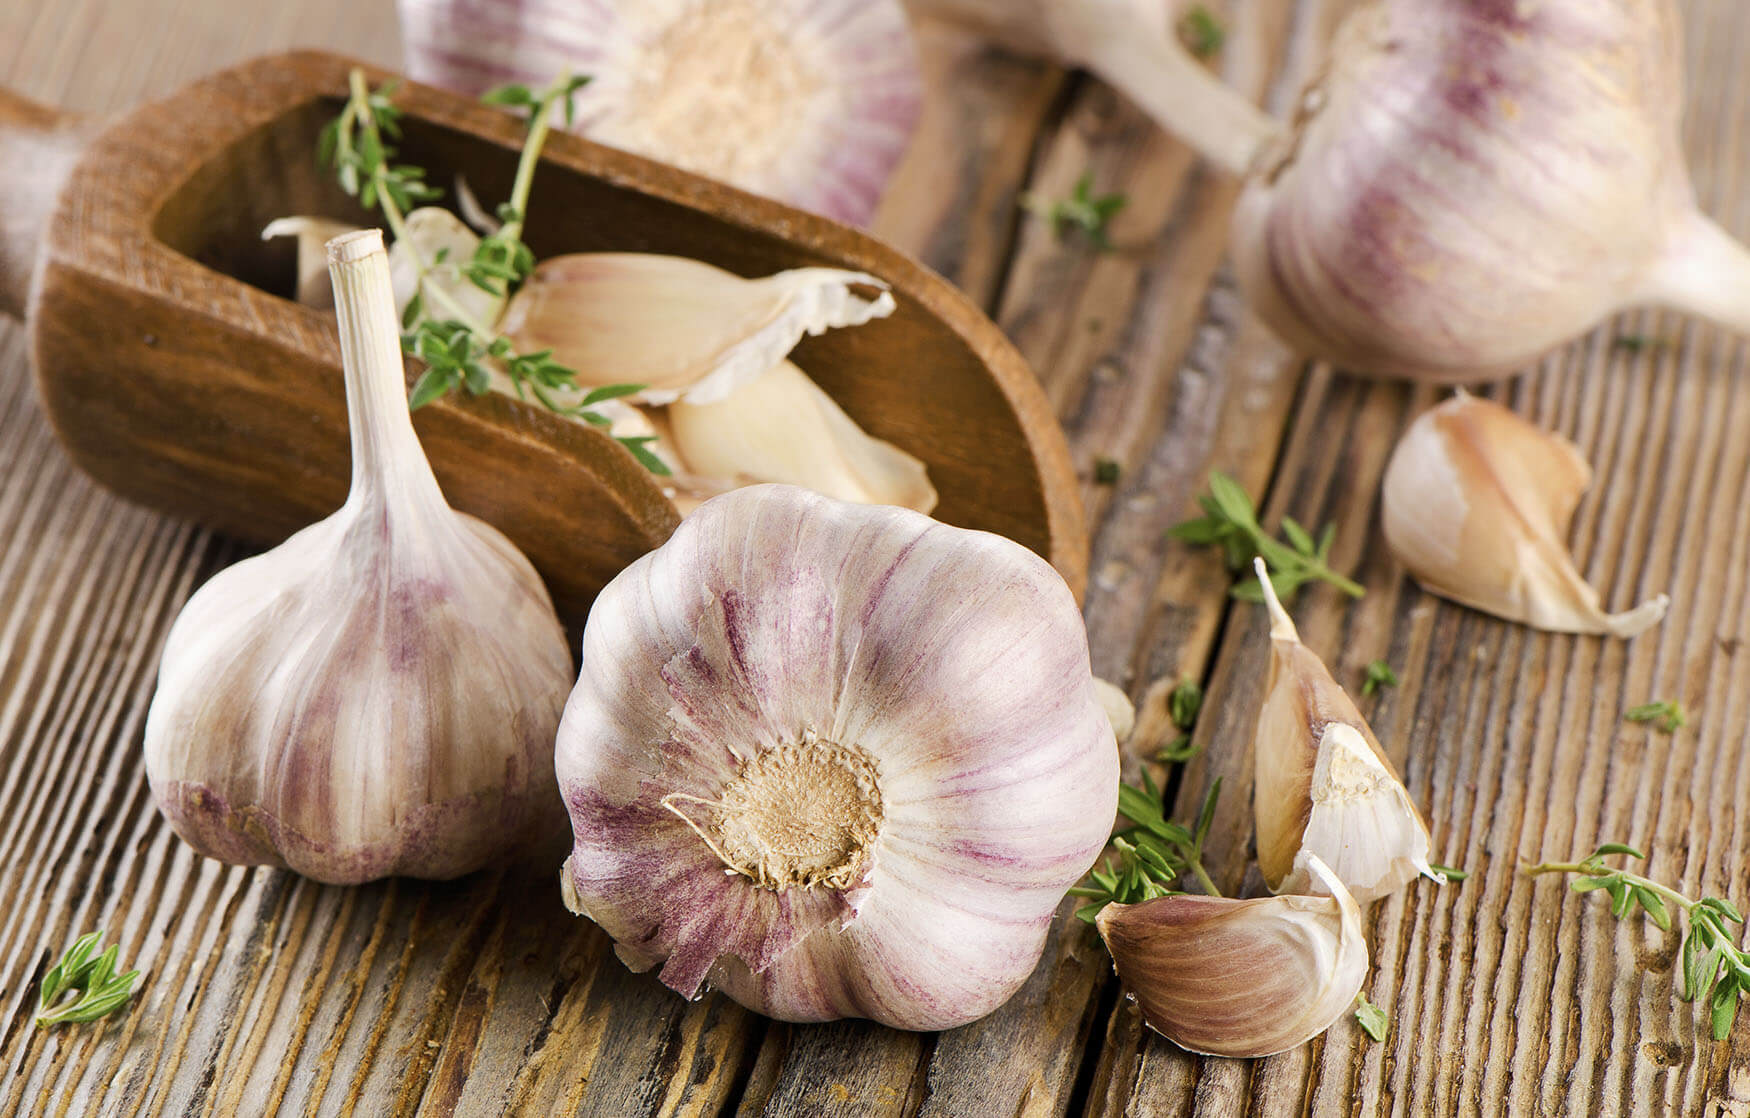 Garlic Does Kill Bacteria